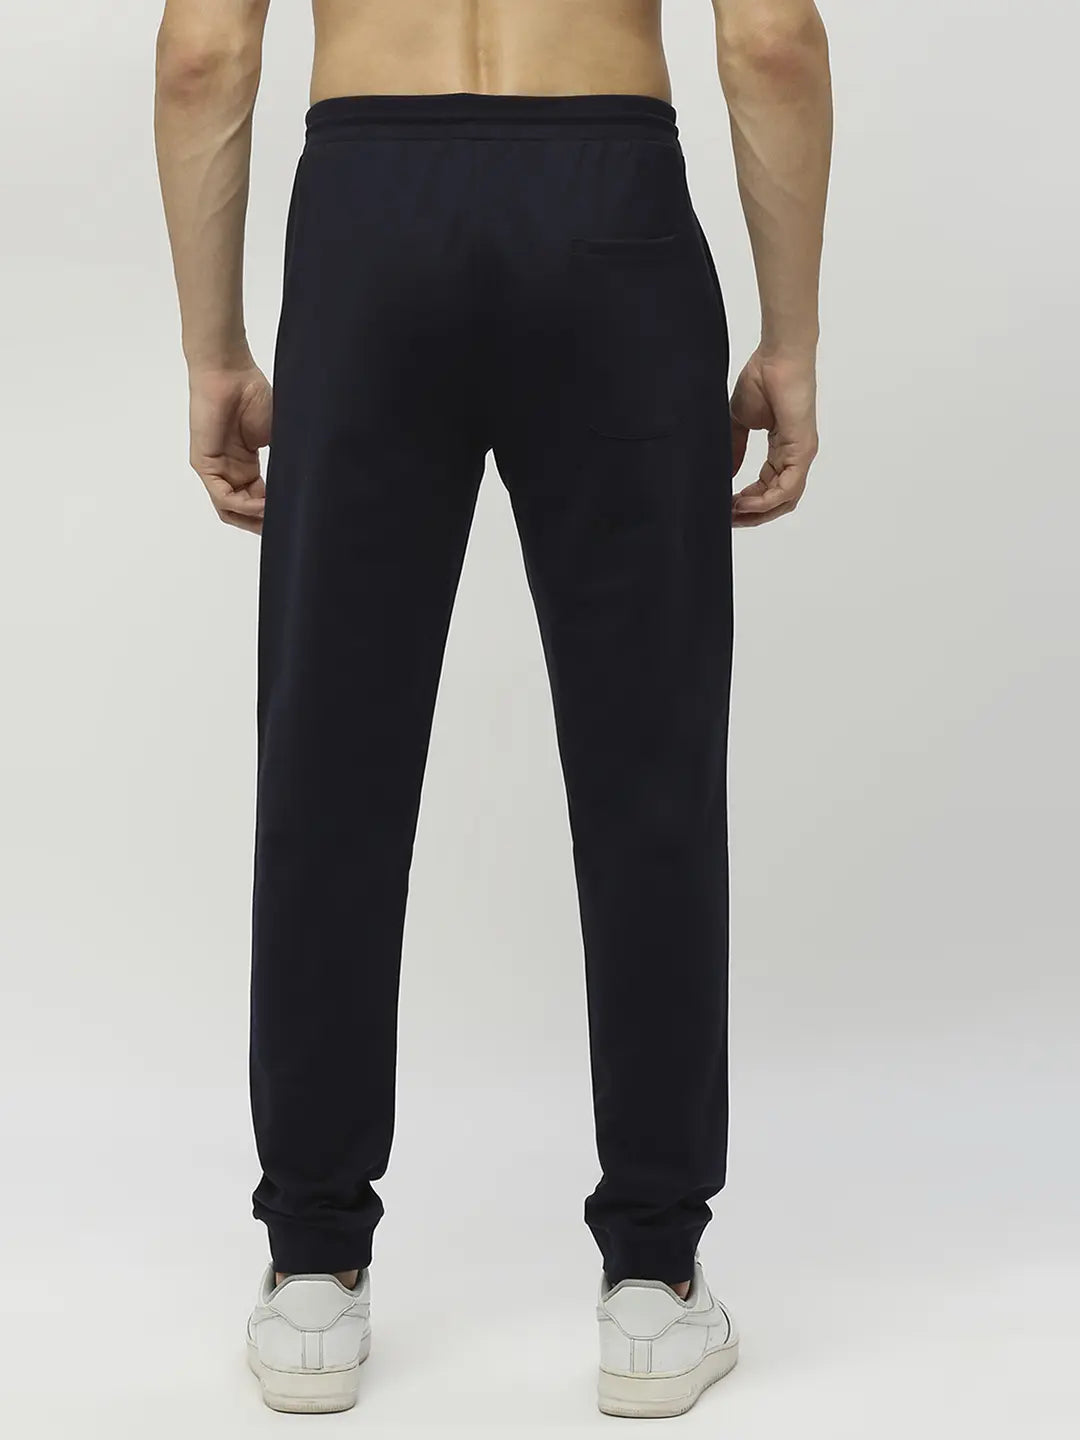 Deuce Premium Sweatpants | Grey – Deuce Brand